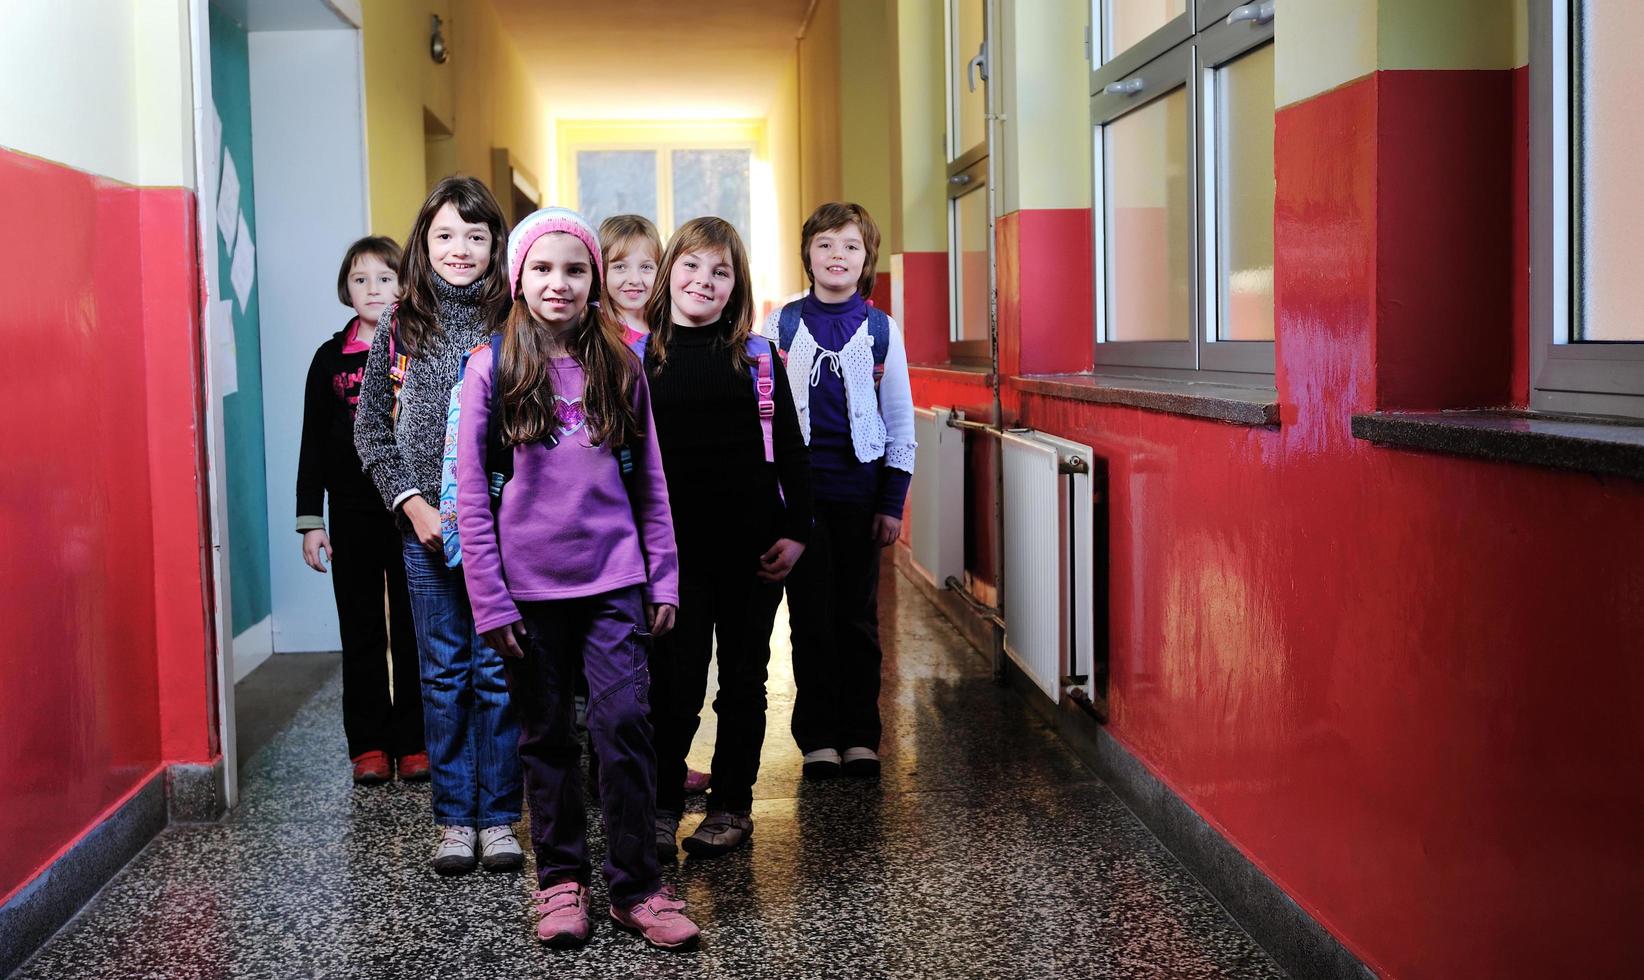 grupo de niños felices en la escuela foto